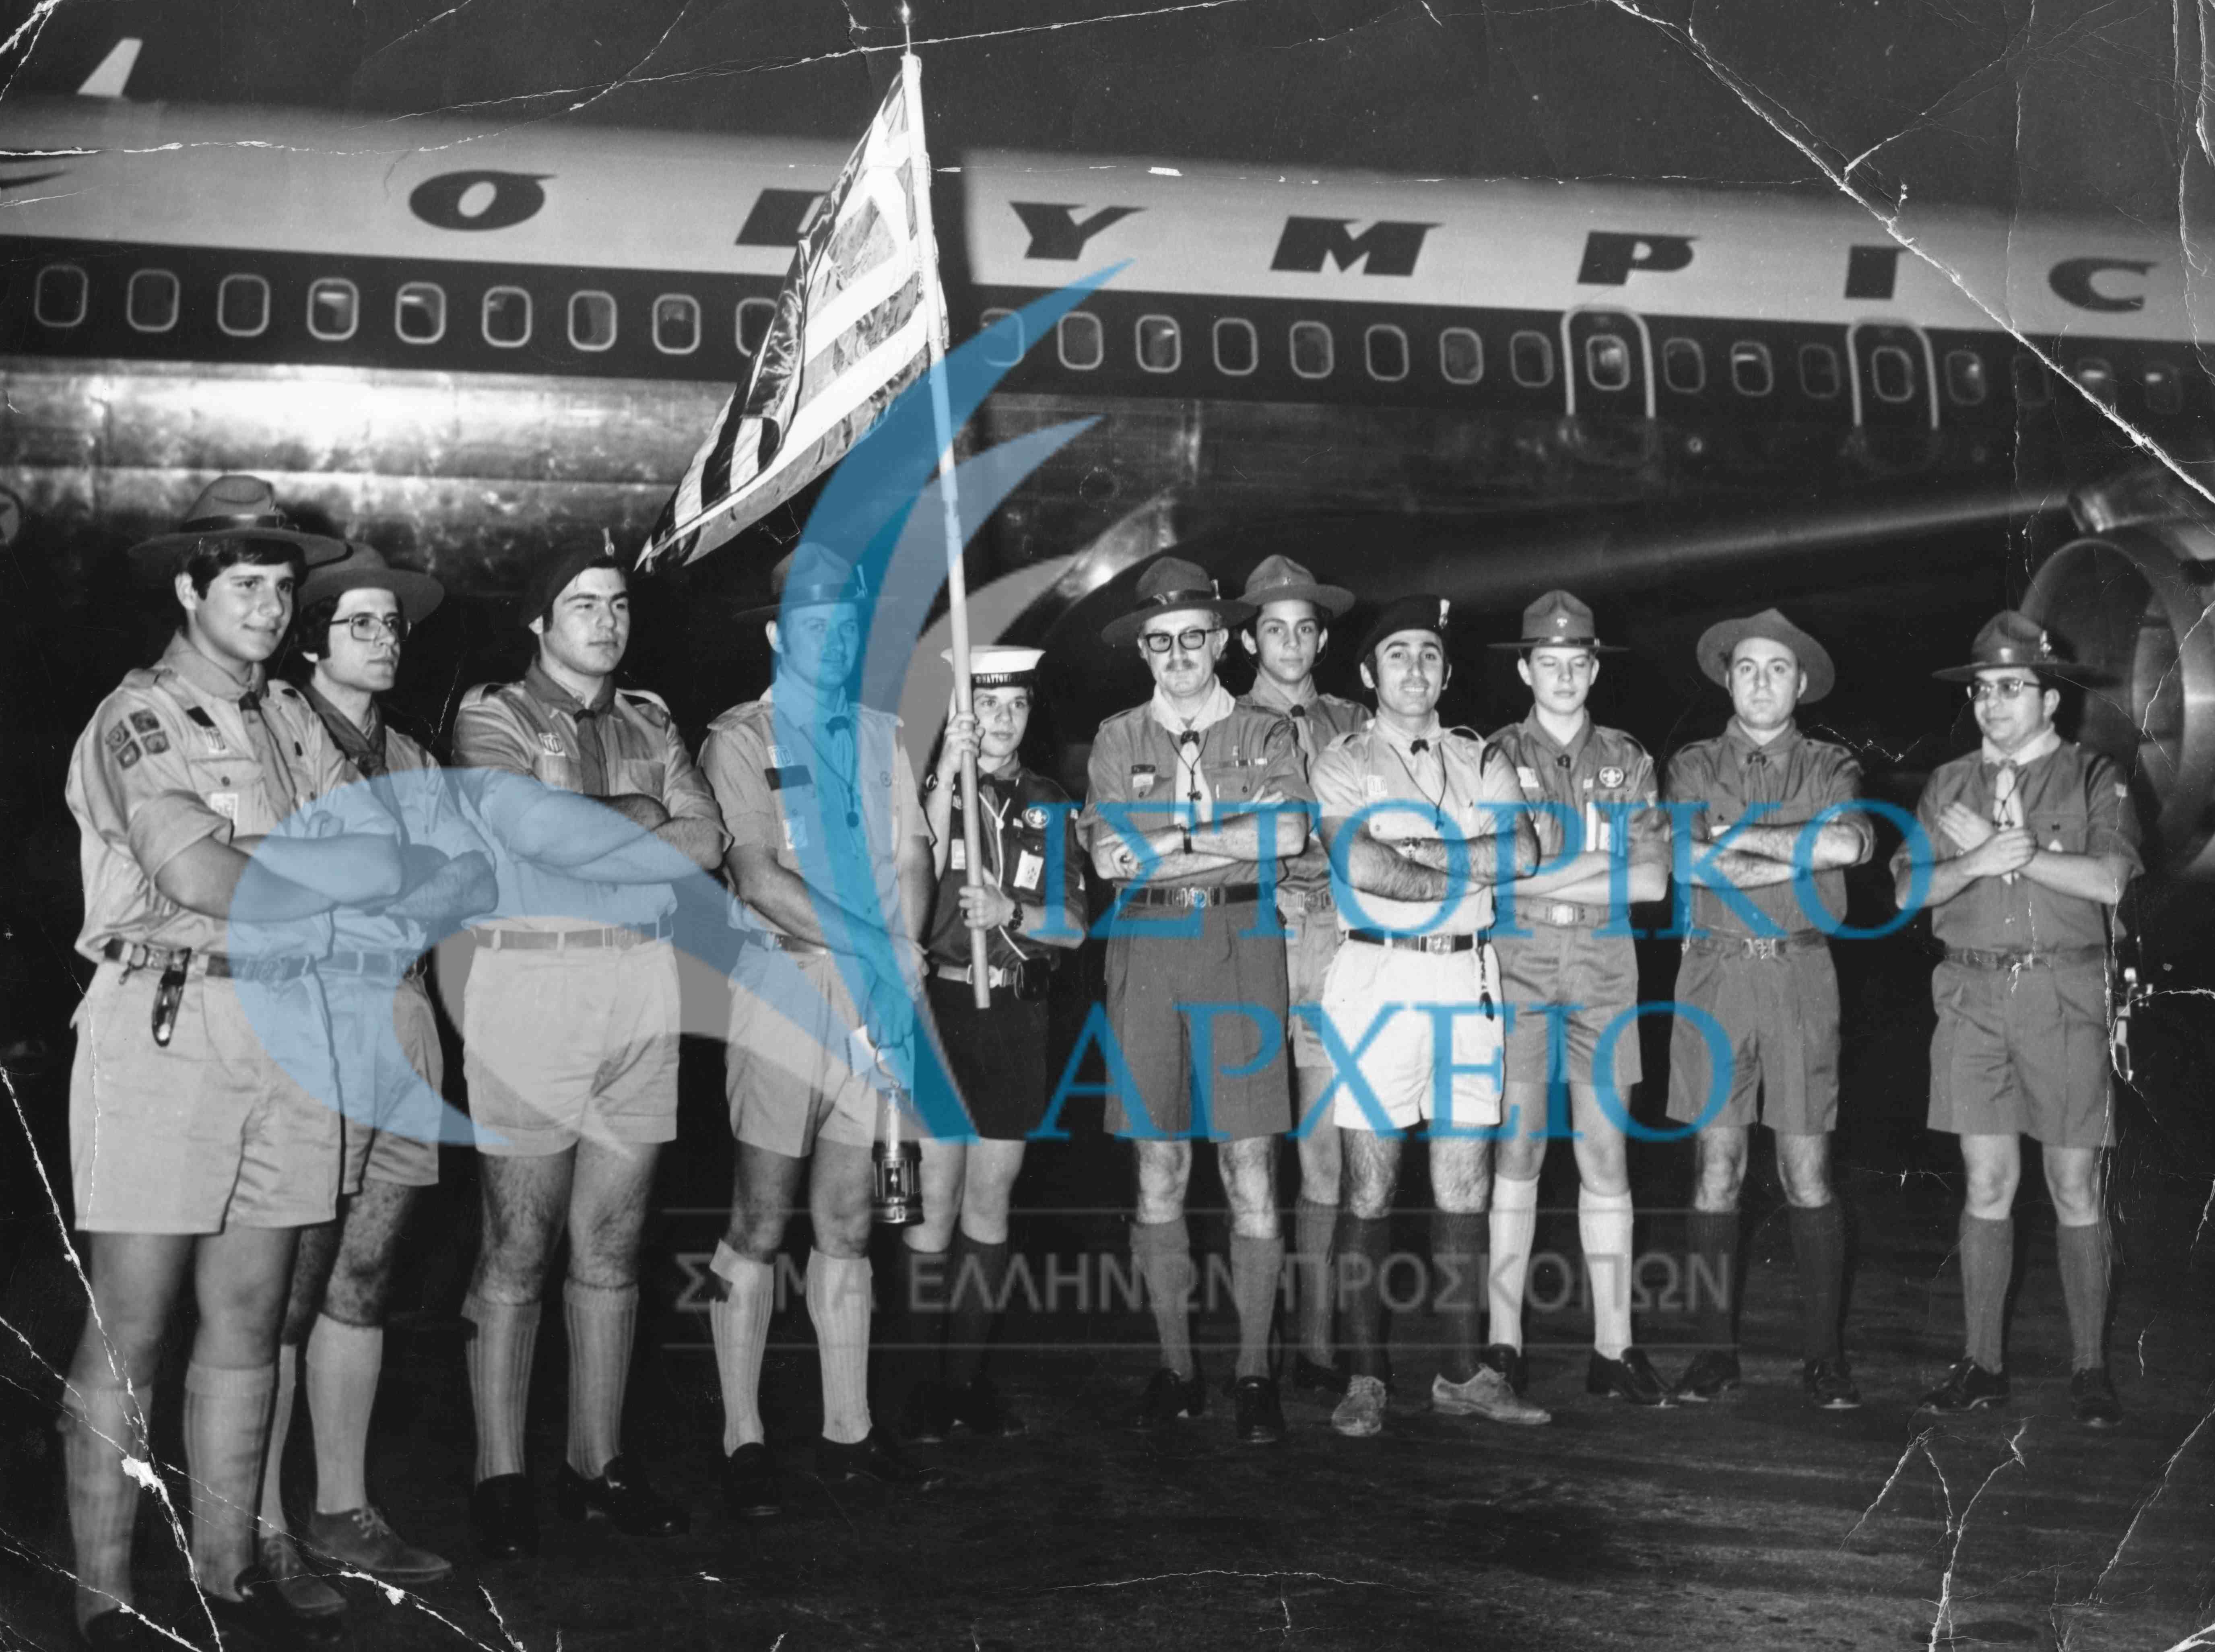 Πρόσκοποι στο Αεροδρόμιο Ελληνικού παραδίδουν την φλόγα στην αποστολή που με πτήση της Ολυμπιακής Αεροπορίας πηγαίνει στο Προσκοπικό Τζάμπορη της Αυστραλίας το 1973.